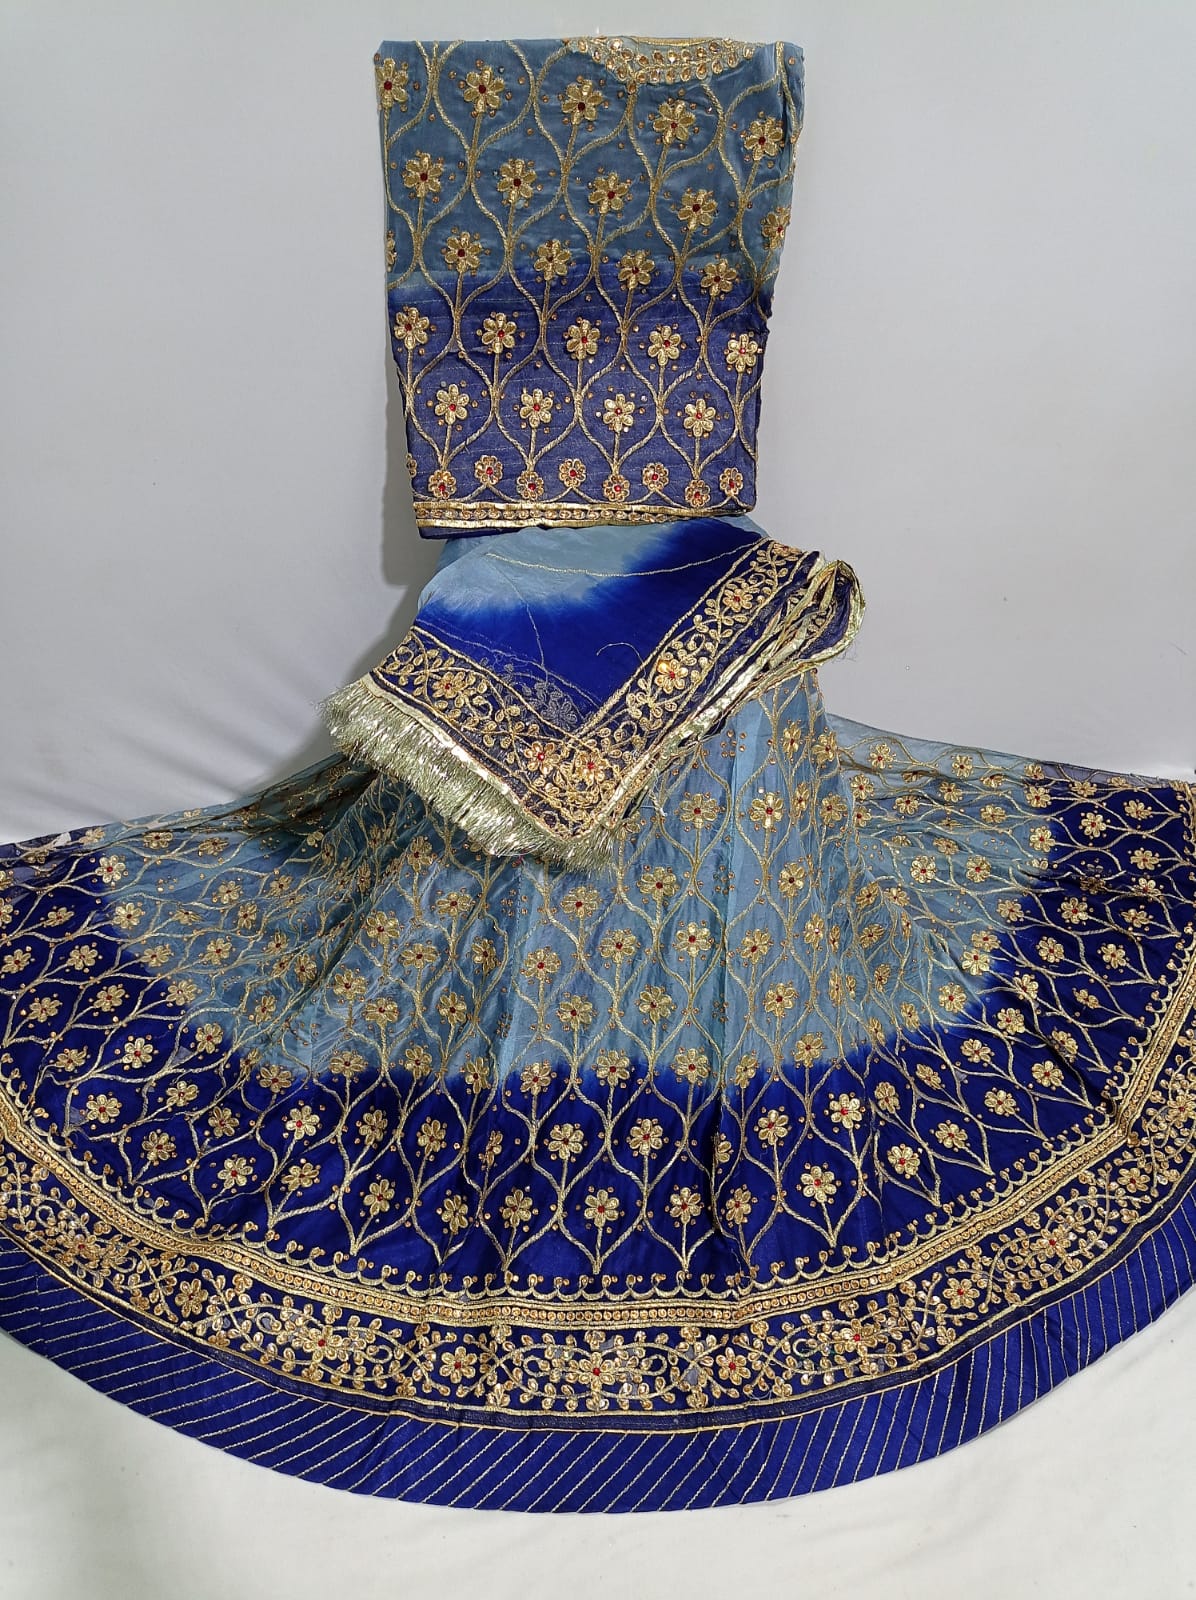 Buy Kkalakriti Kalbelia or Kalbeliya Dress(Black) Professional Tribal Dance  Rajasthan Costume Or Lehenga Choli For Adult at Amazon.in